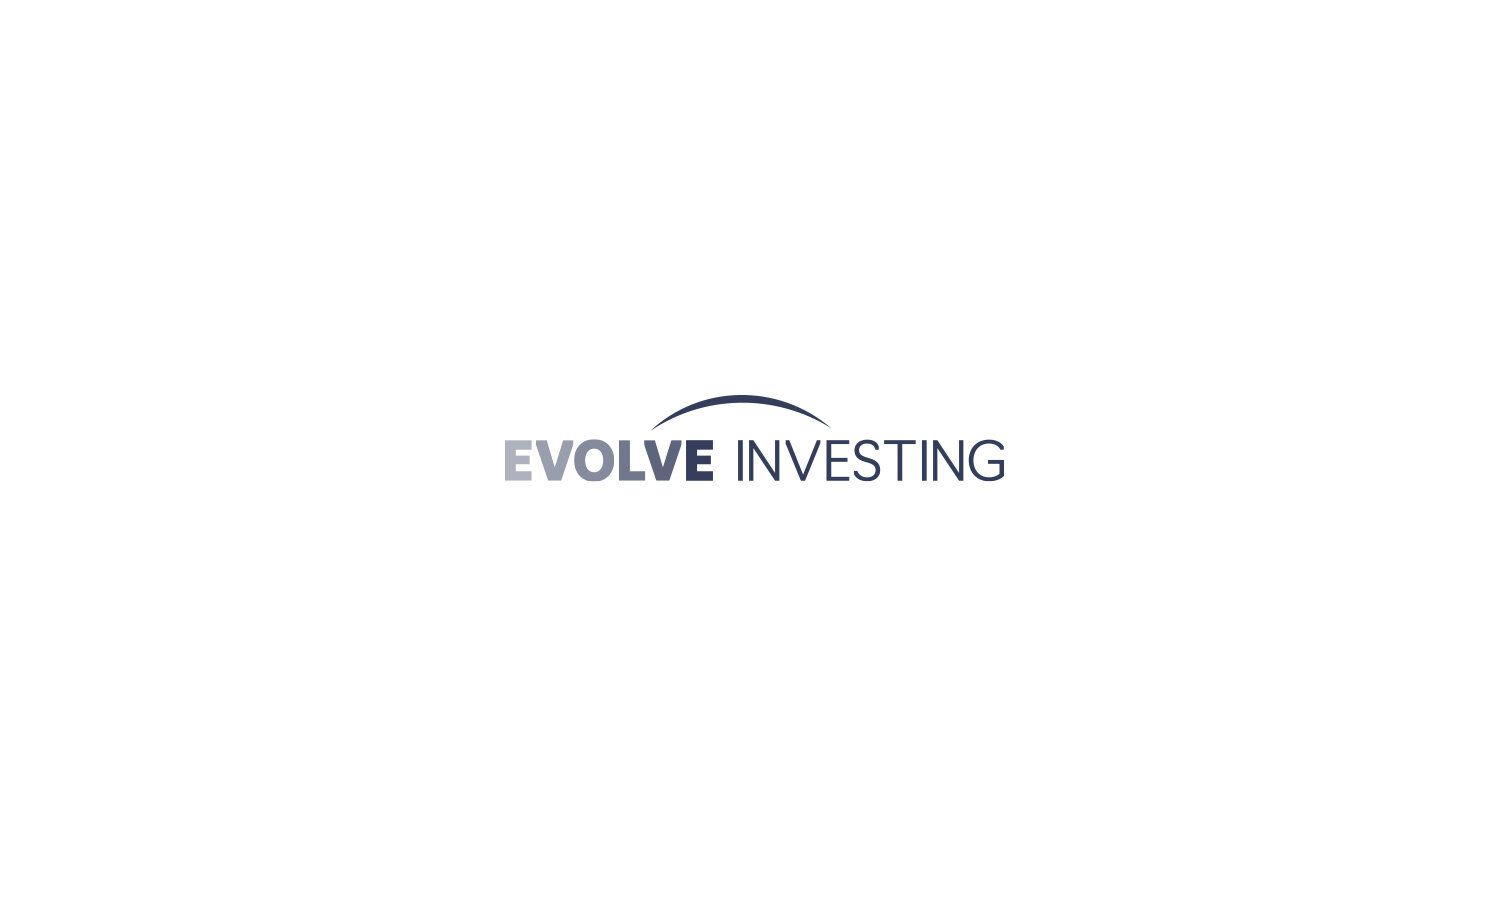 john_dill-evolve-investing-logo1.jpg